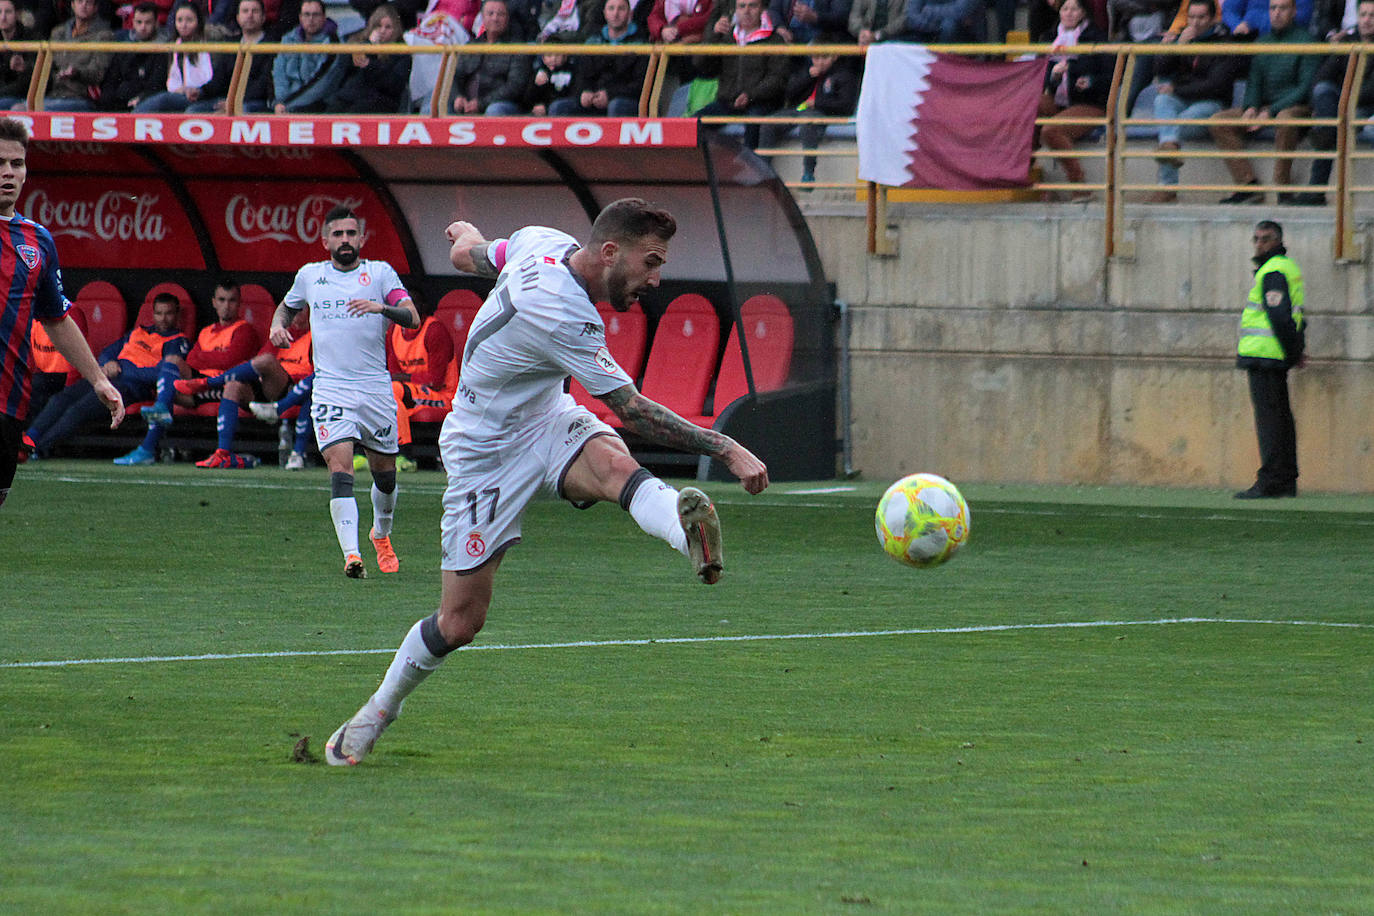 La Cultural se midió al SD Leioa en la décima jornada del campeonato nacional de liga en el grupo II de Segunda División B.